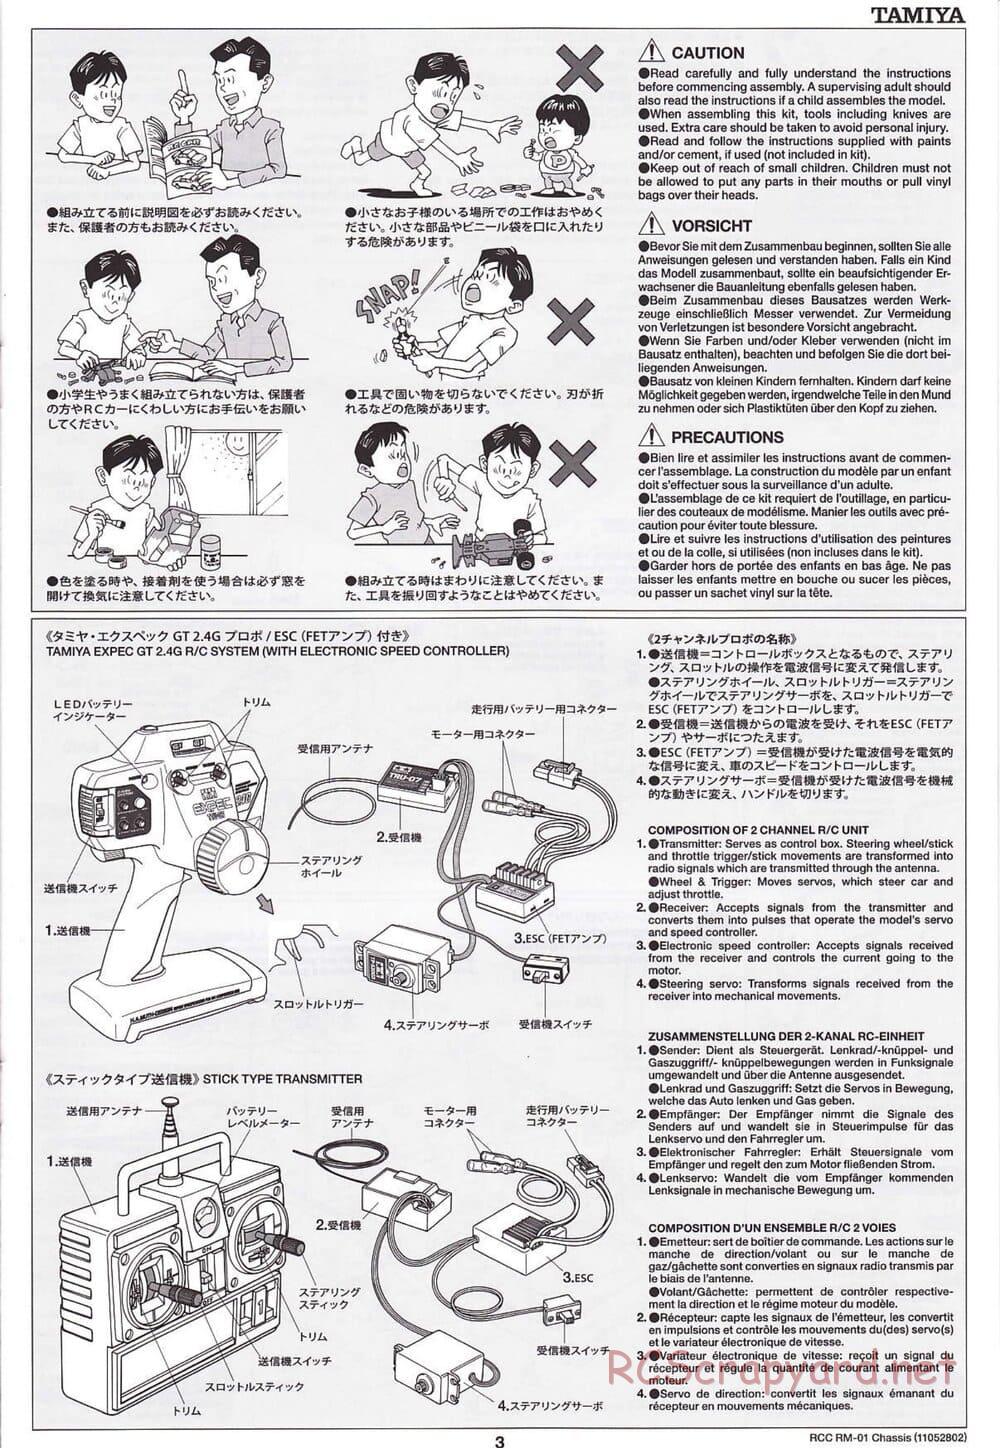 Tamiya - TA04-SS Chassis - Manual - Page 3